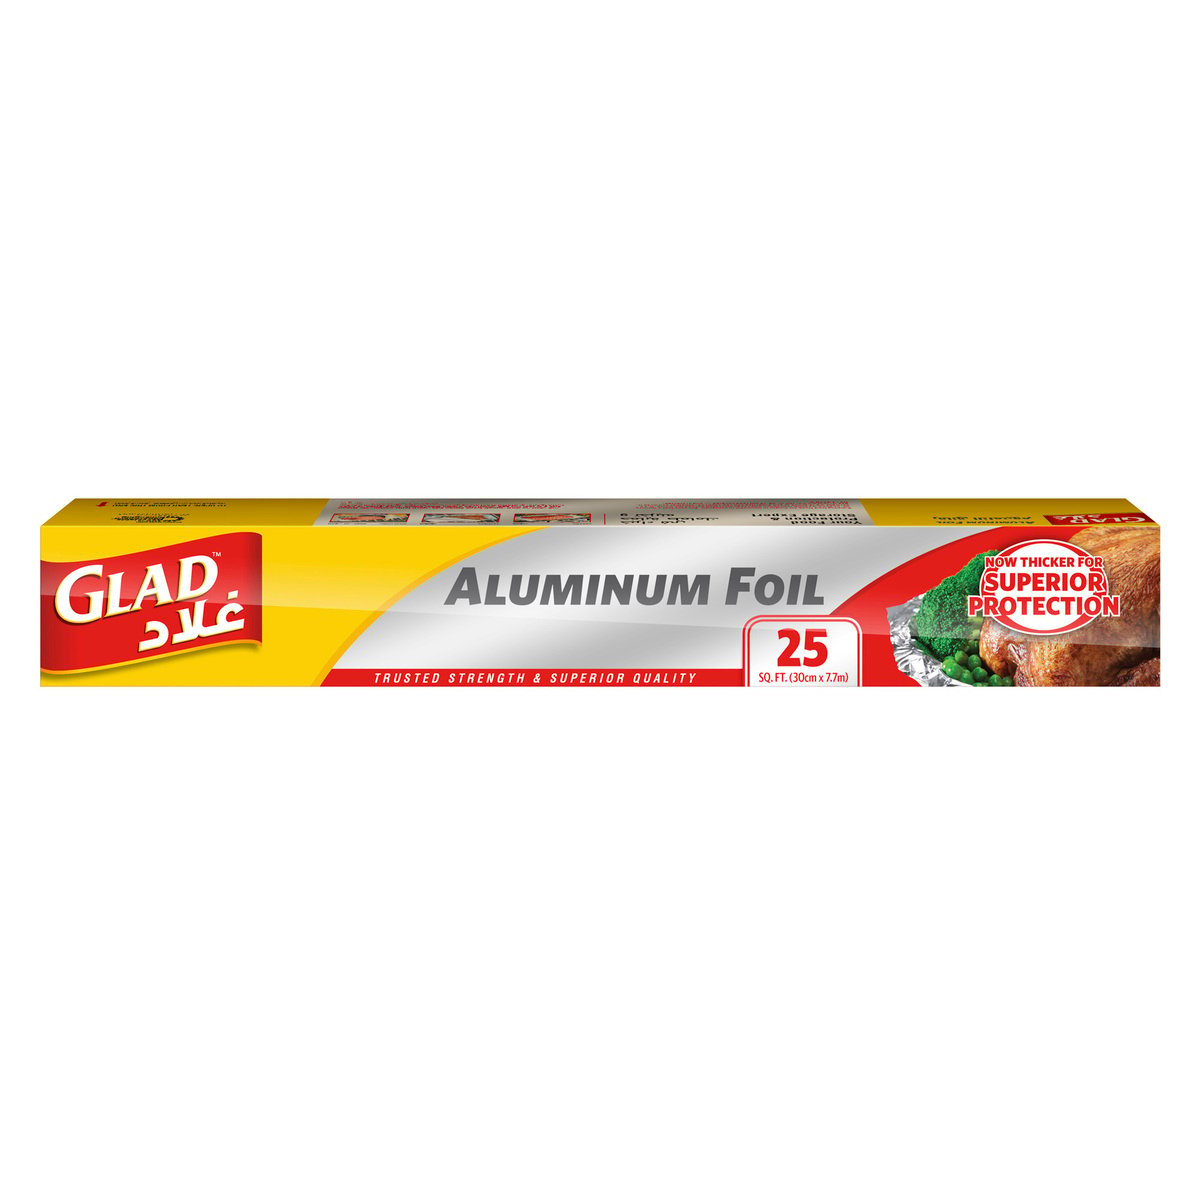 Buy Glad Aluminum Foil Size 30cm x 7.7m 25 sq. ft. 1pc Online at Best Price | Aluminium Foil | Lulu UAE in UAE